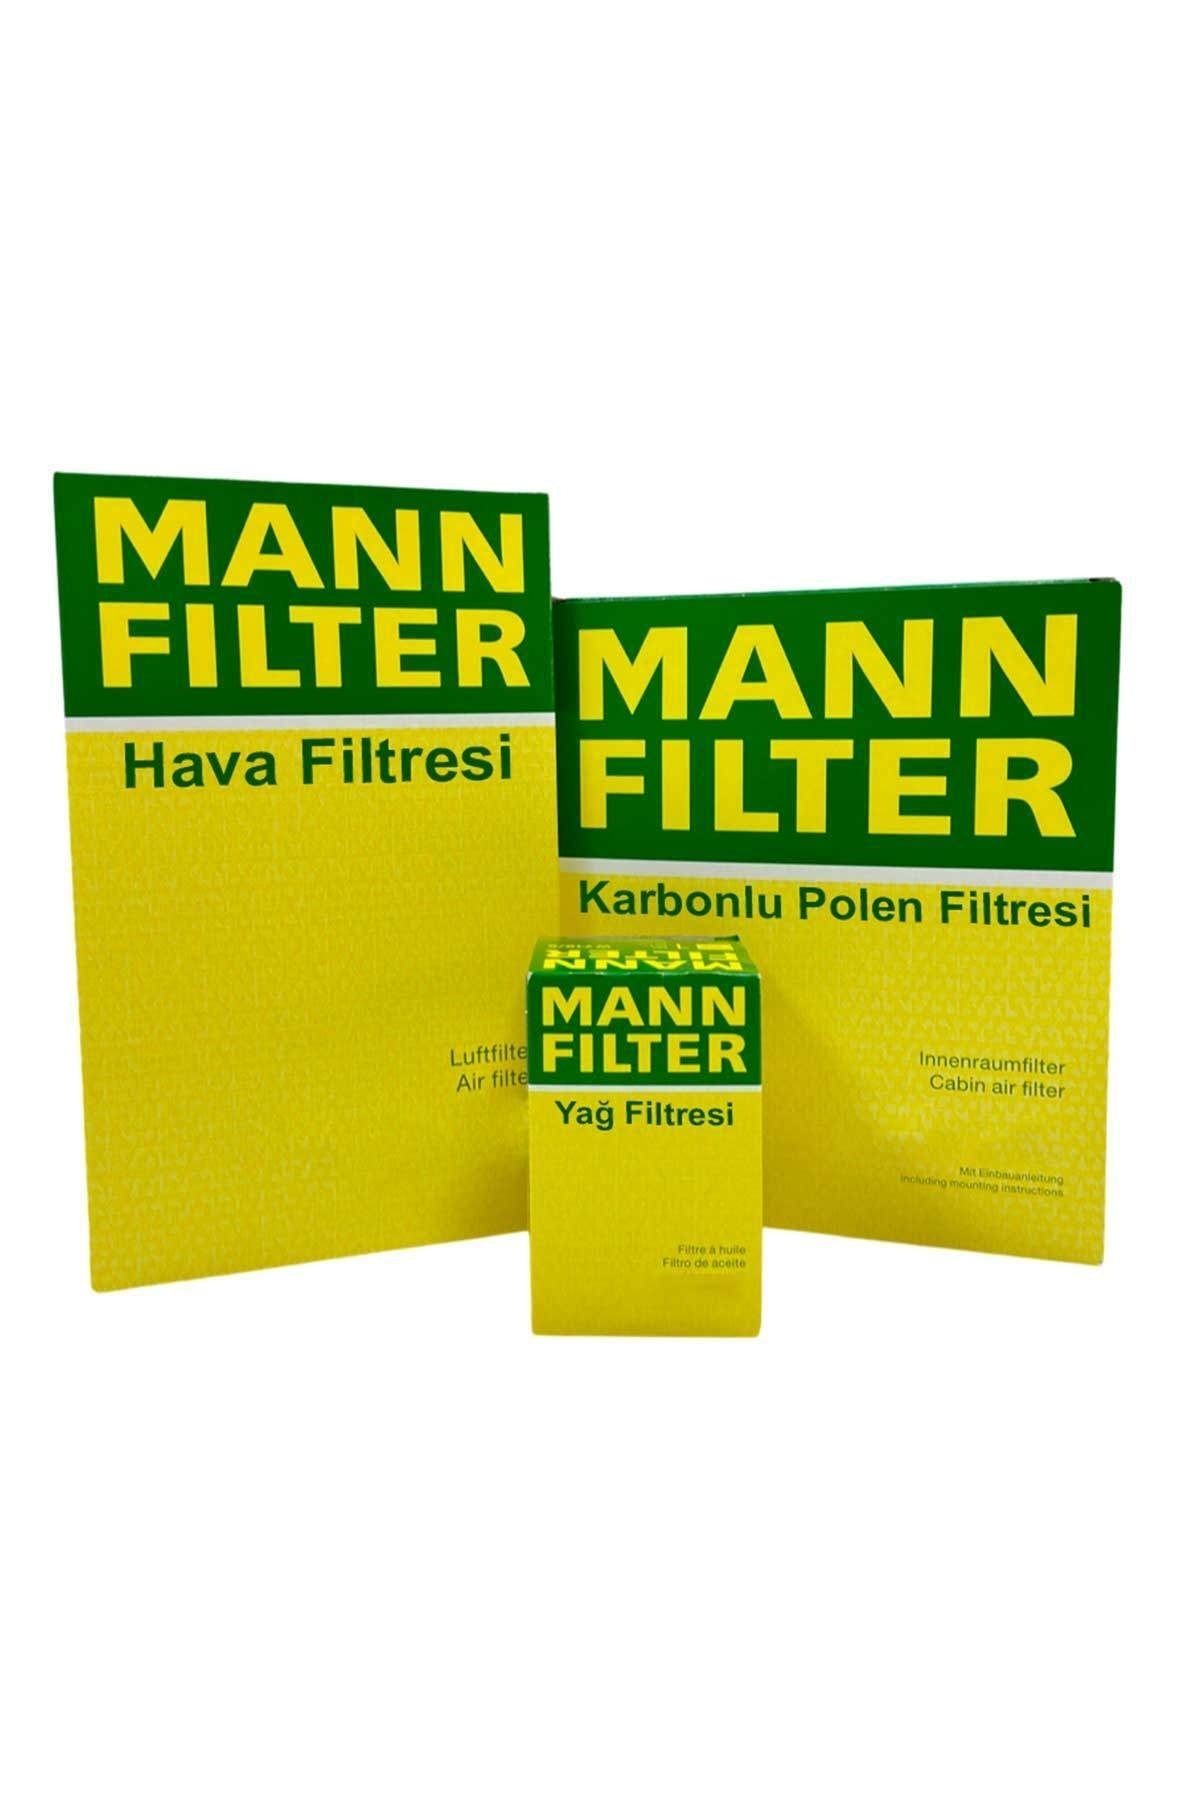 Mann Filter Uzmanparça Skoda Octavia 1.6 Tdı Dizel Mann Filtre Bakım Seti 2013-2019 | Hava+yağ+karbonlu Polen